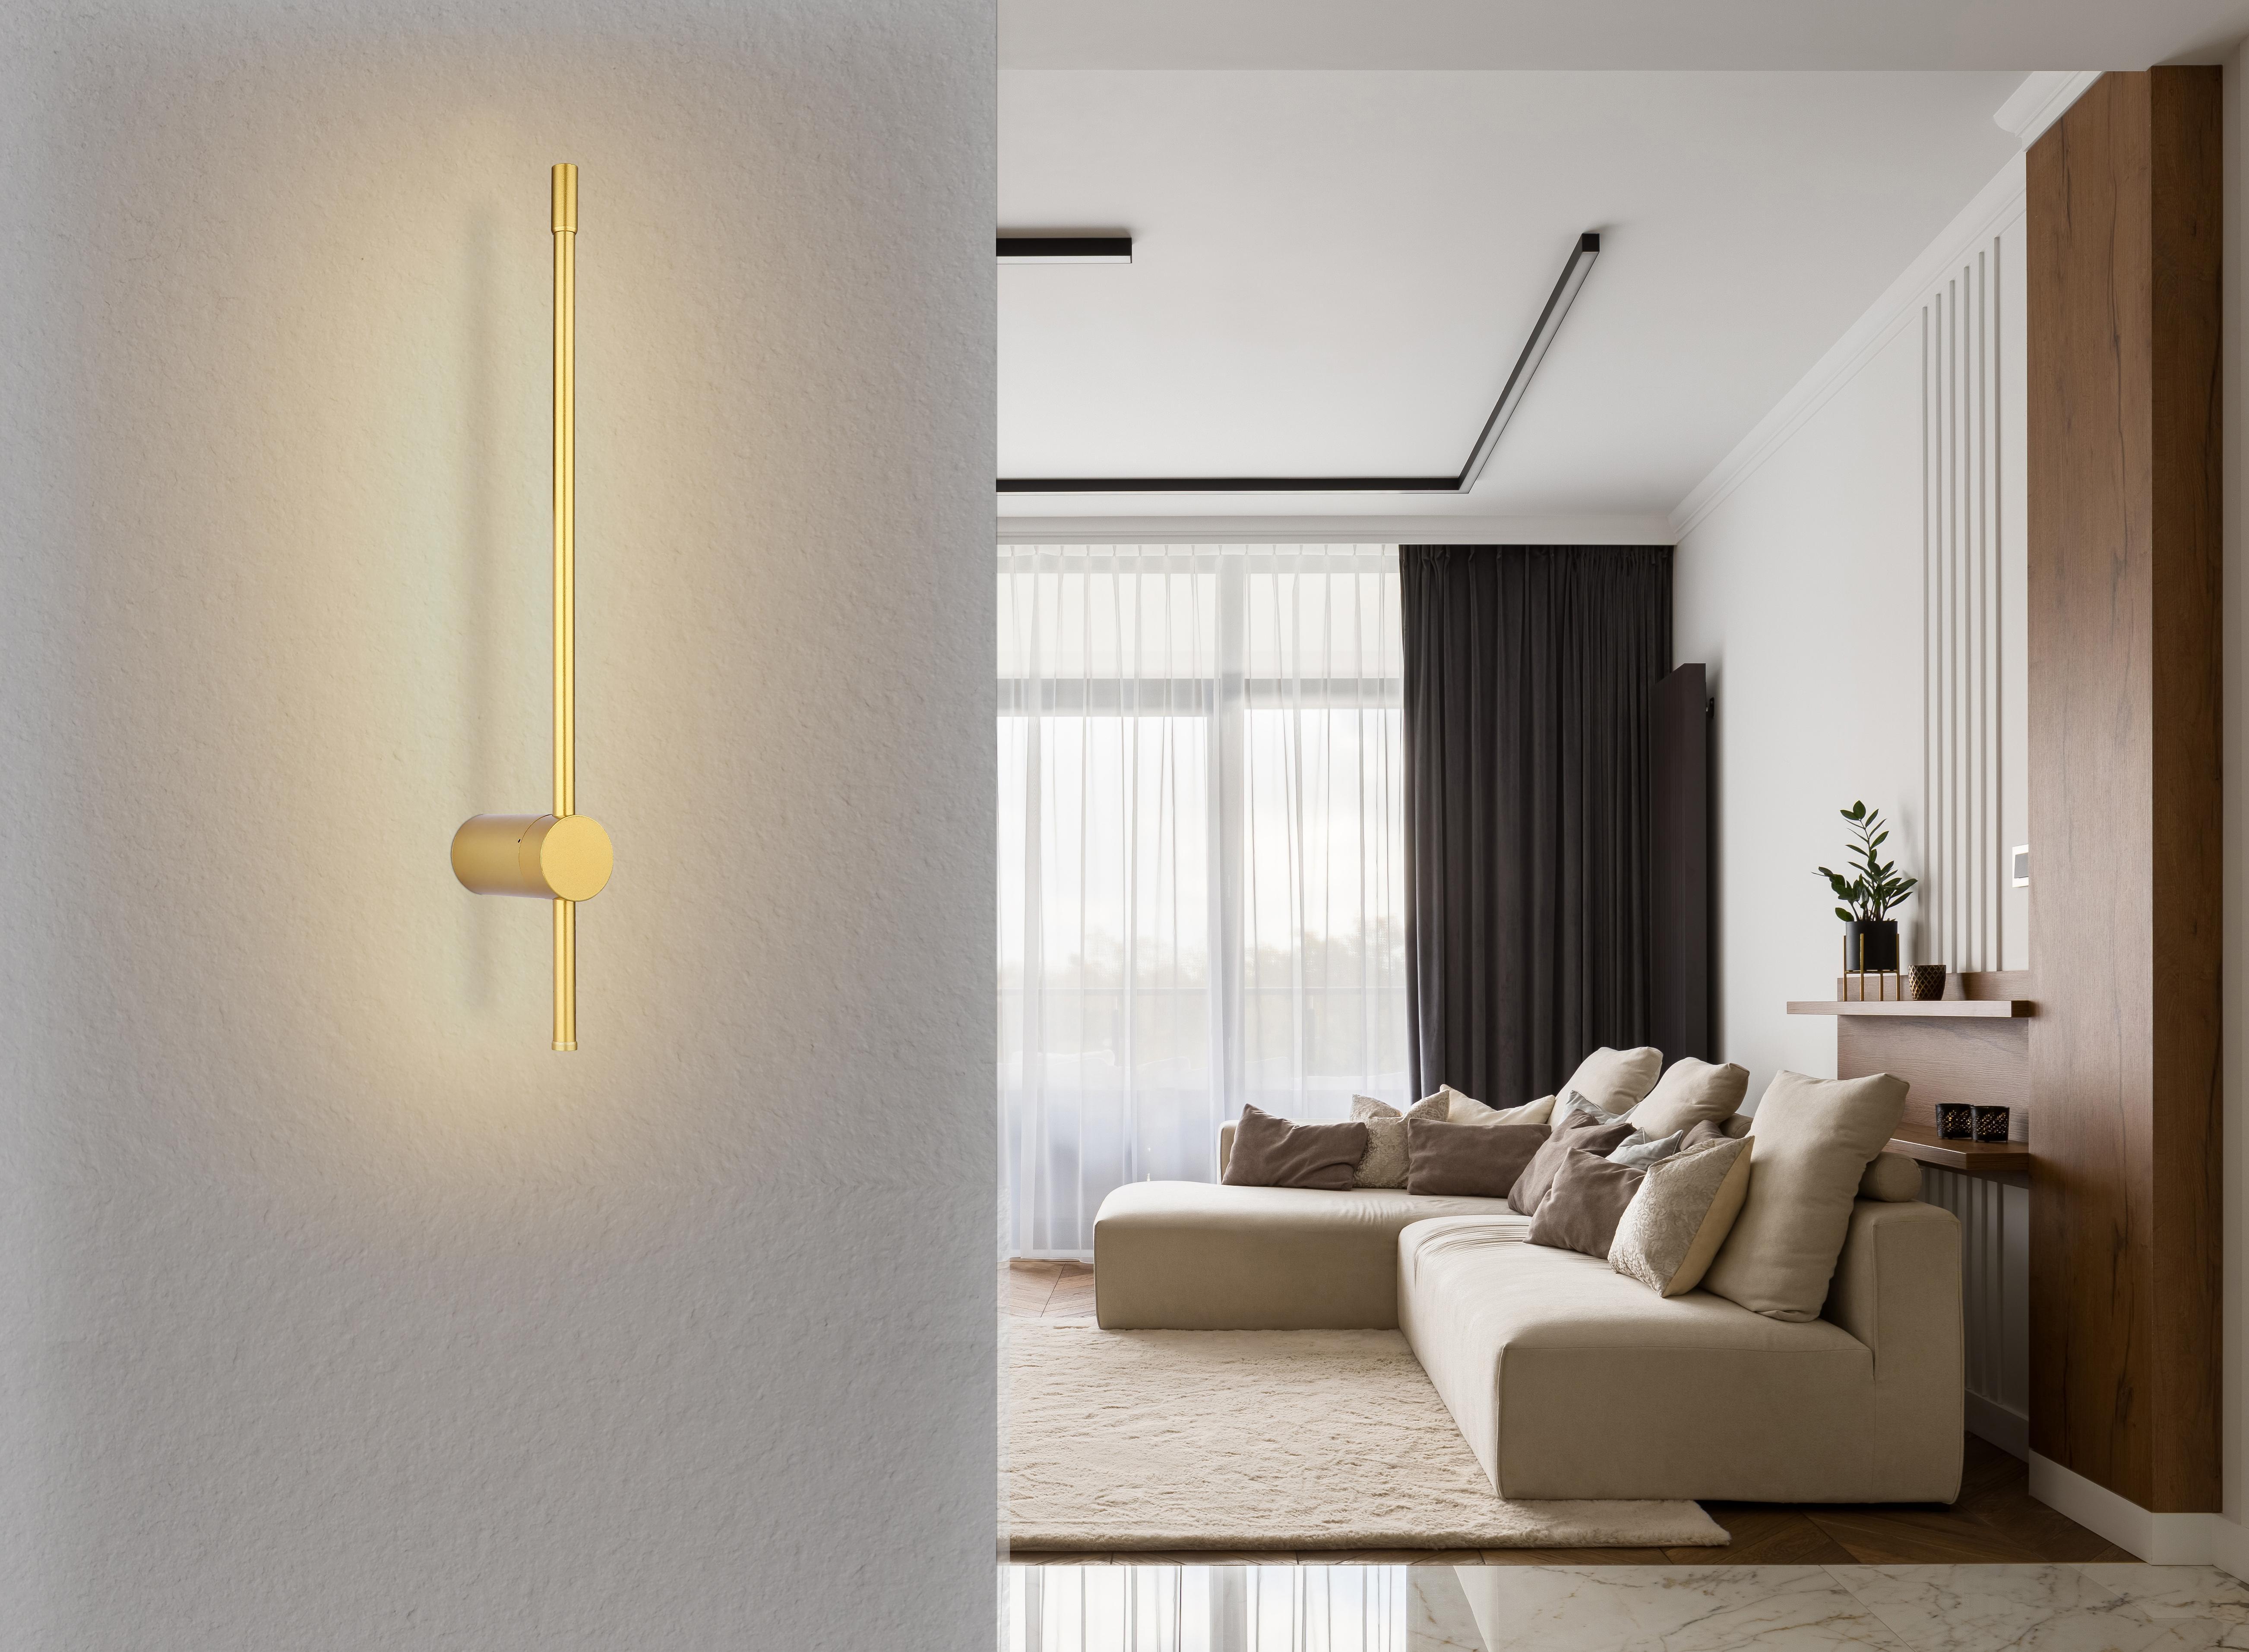 Lampada applique GLOBO CHASEY, lampadina LED inclusa 12W 75 lm, da parete, color oro, GLB 78407-12B.